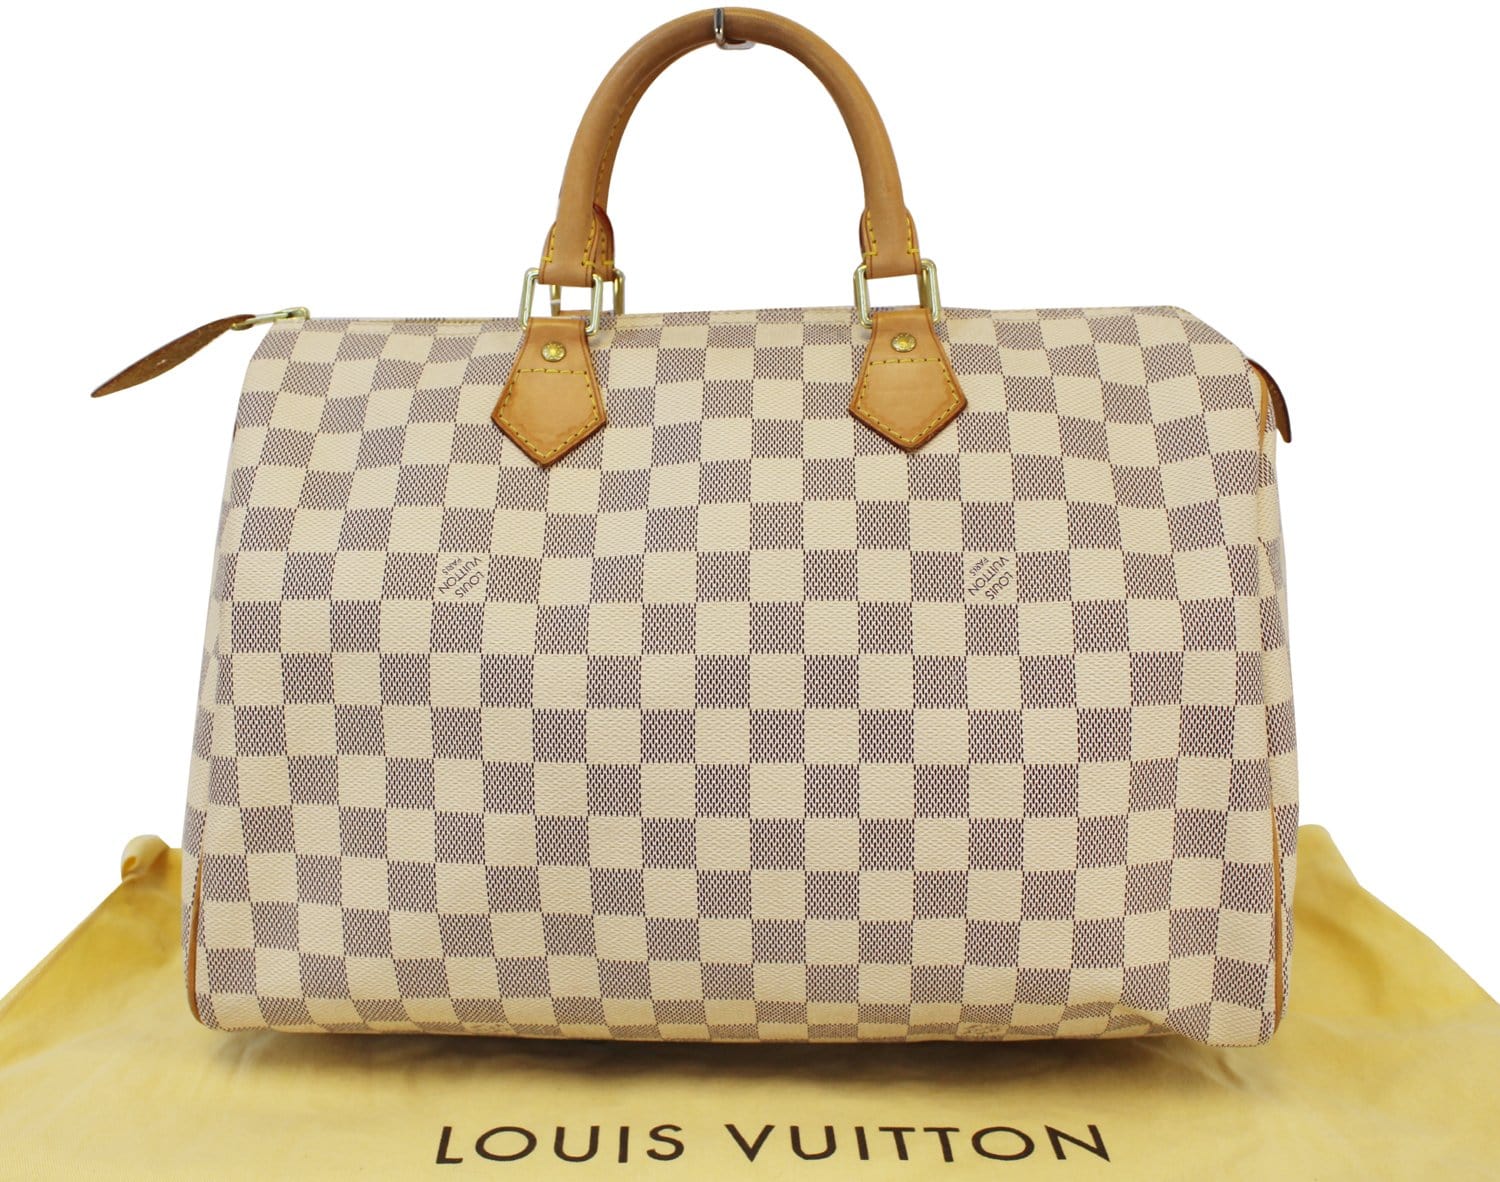 Louis Vuitton Azur Speedy 35 Satchel - A World Of Goods For You, LLC